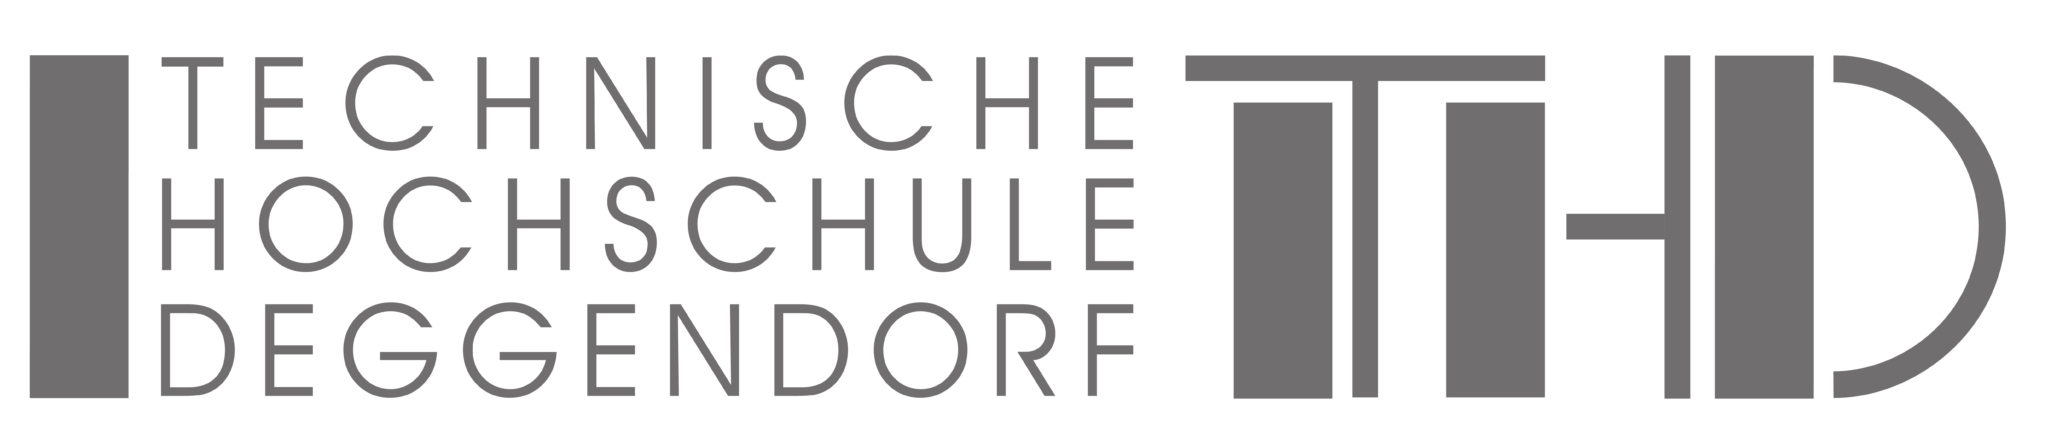 Logo der THD - Technische Hochschule Deggendorf 